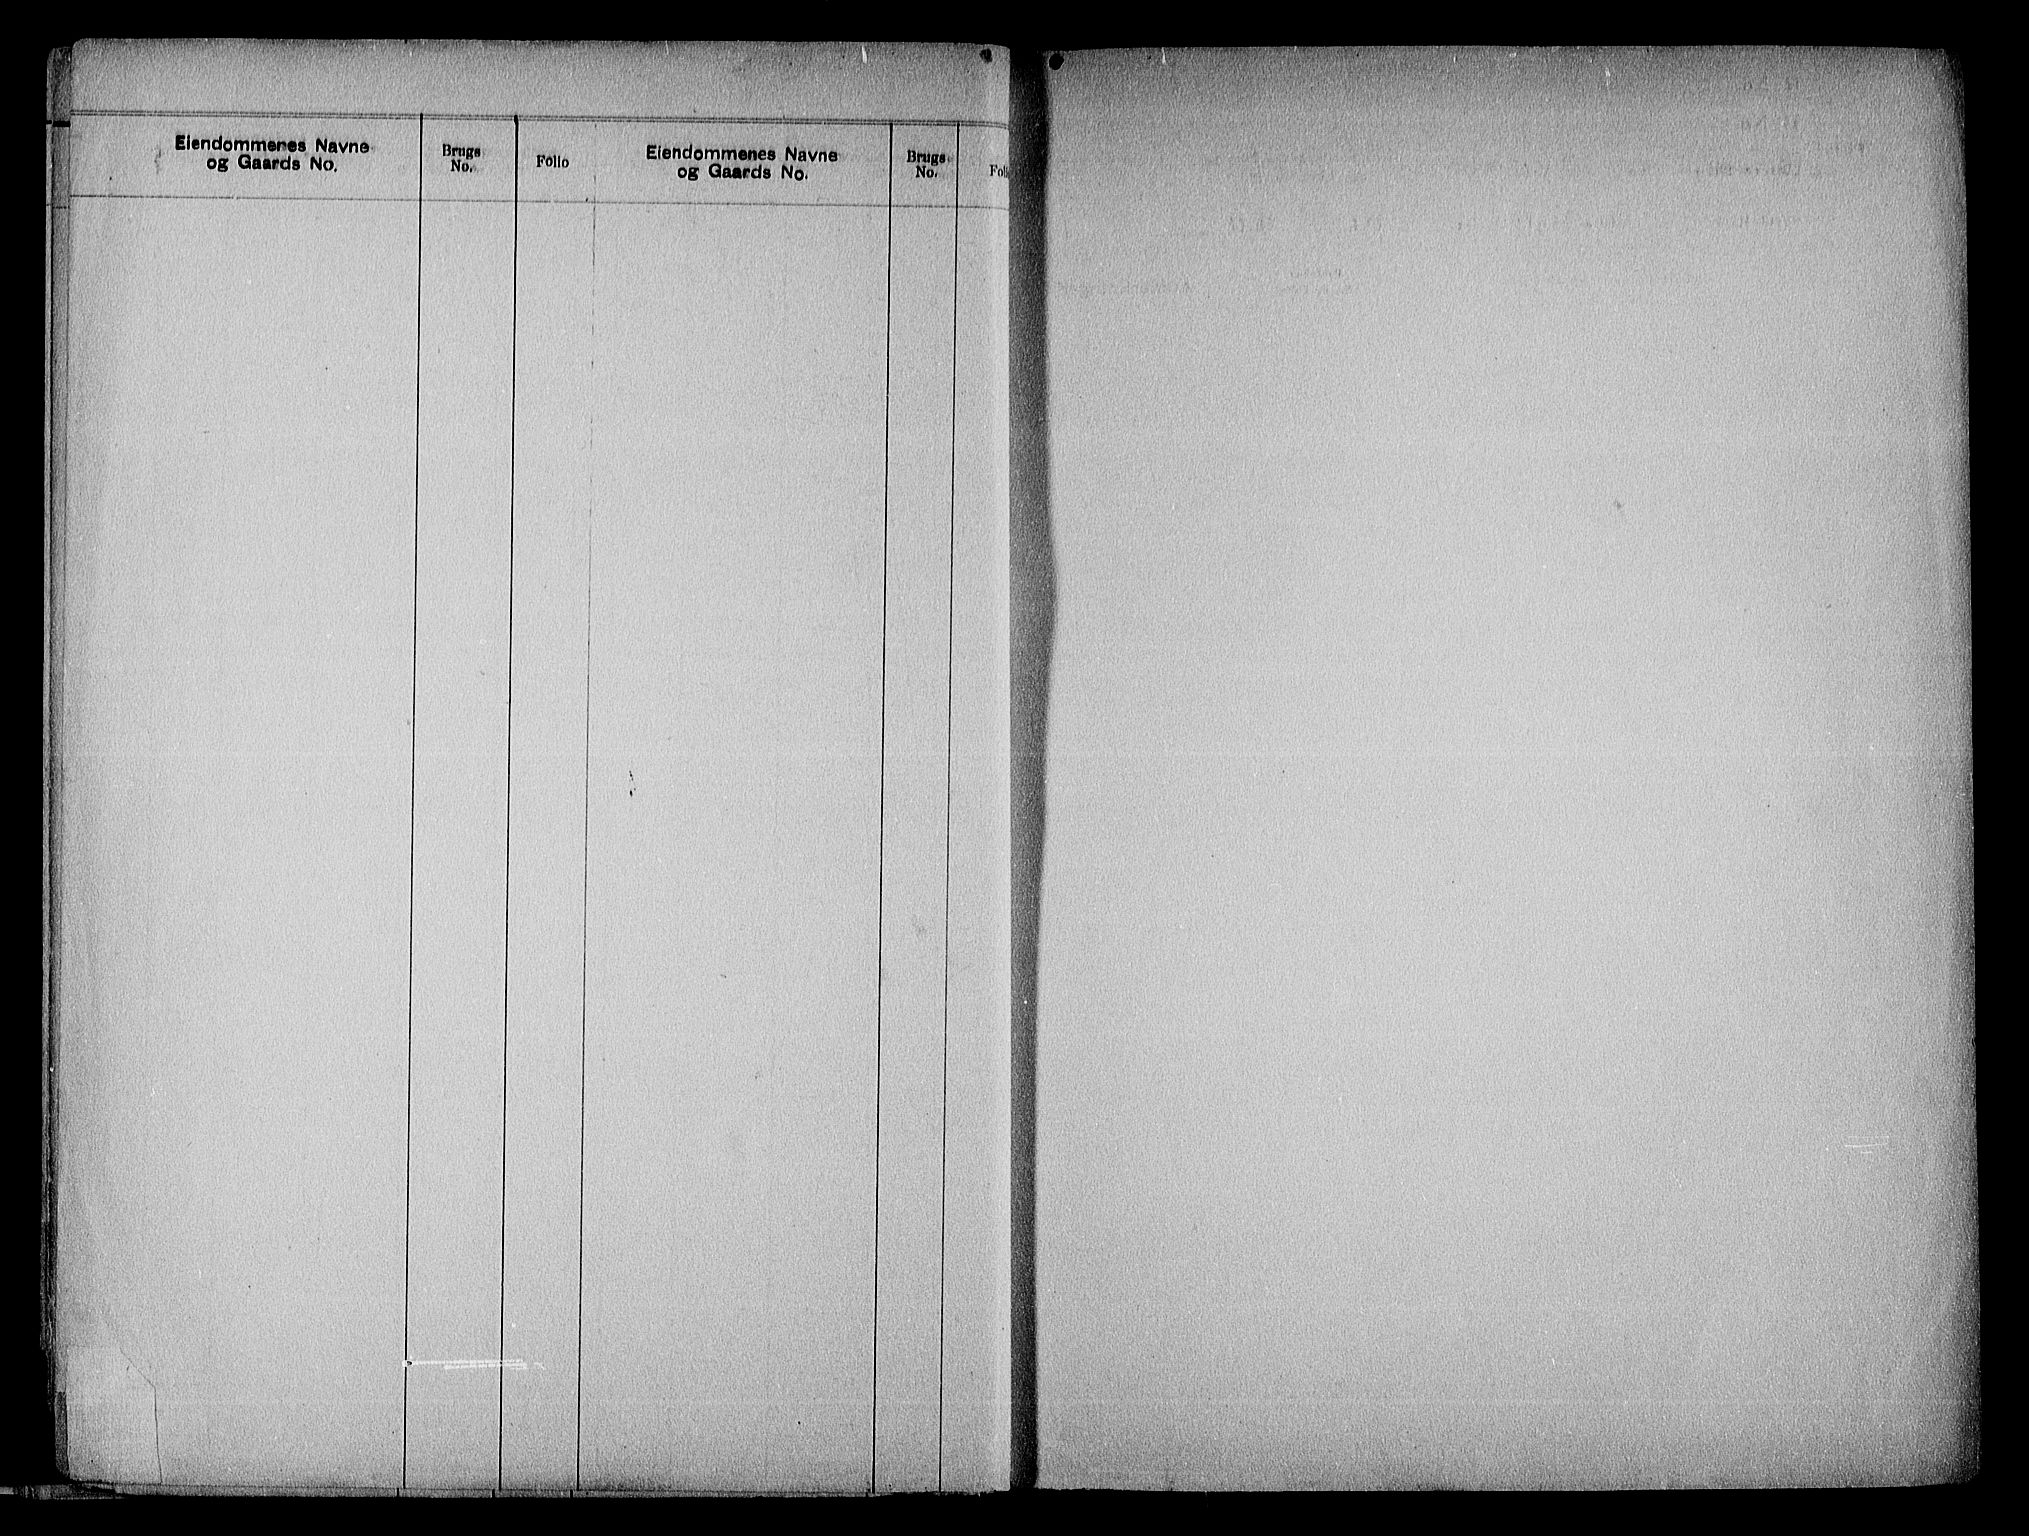 Nedenes sorenskriveri, SAK/1221-0006/G/Ga/Gaa/L0016: Panteregister nr. 16, 1915-1955